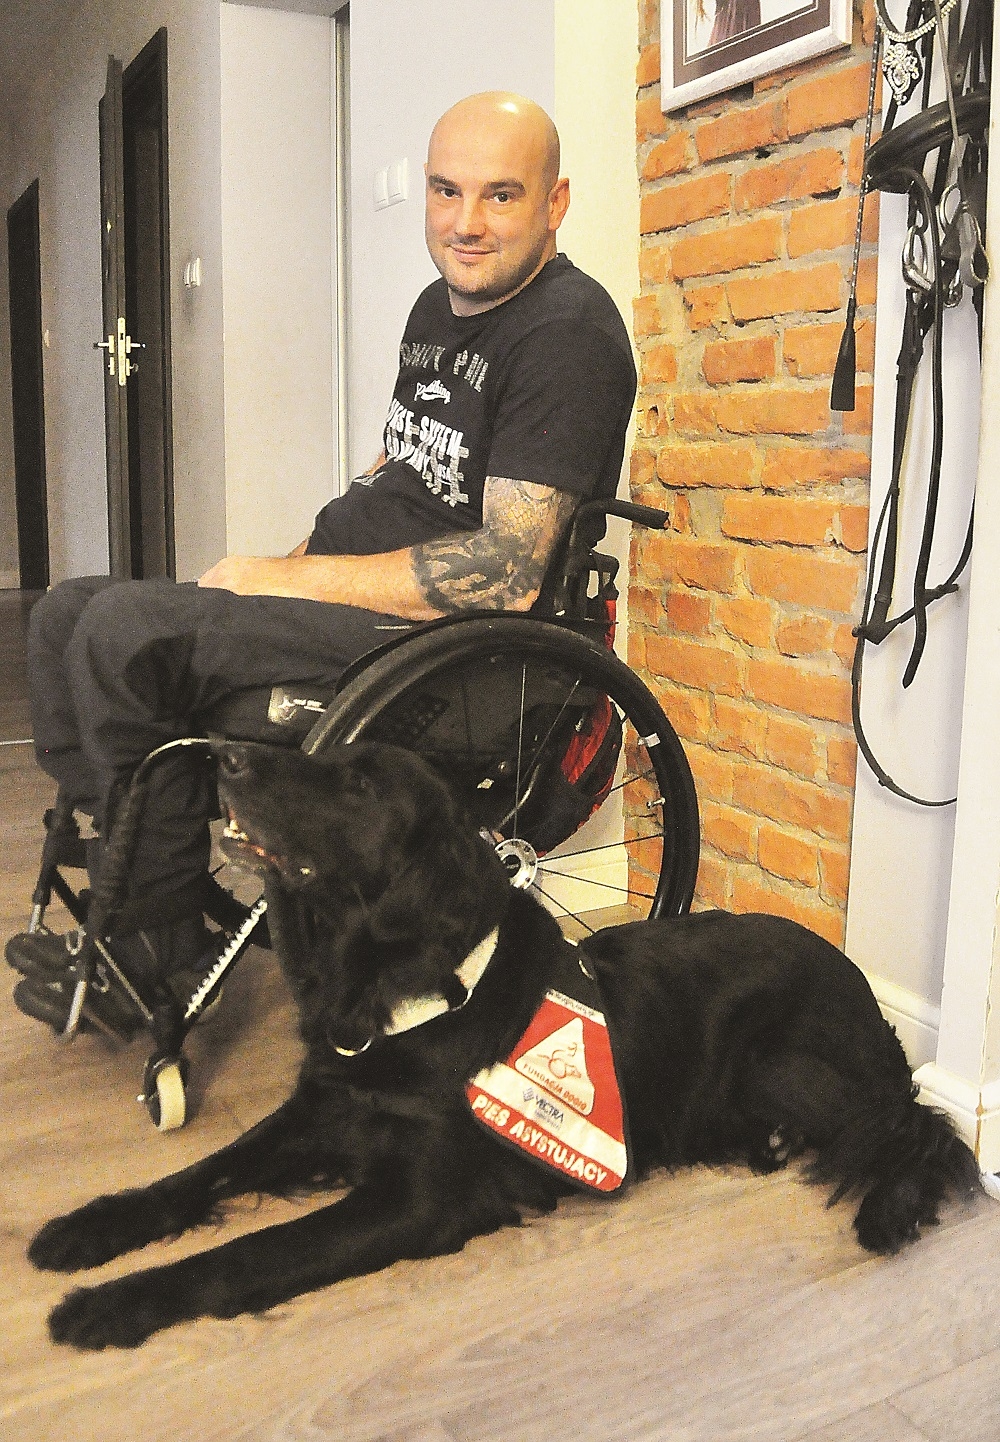 Zgodnie z ustawą pies asystujący niepełnosprawnemu może wejść wszędzie z osobą, której pomaga.  - Zdjęcie główne